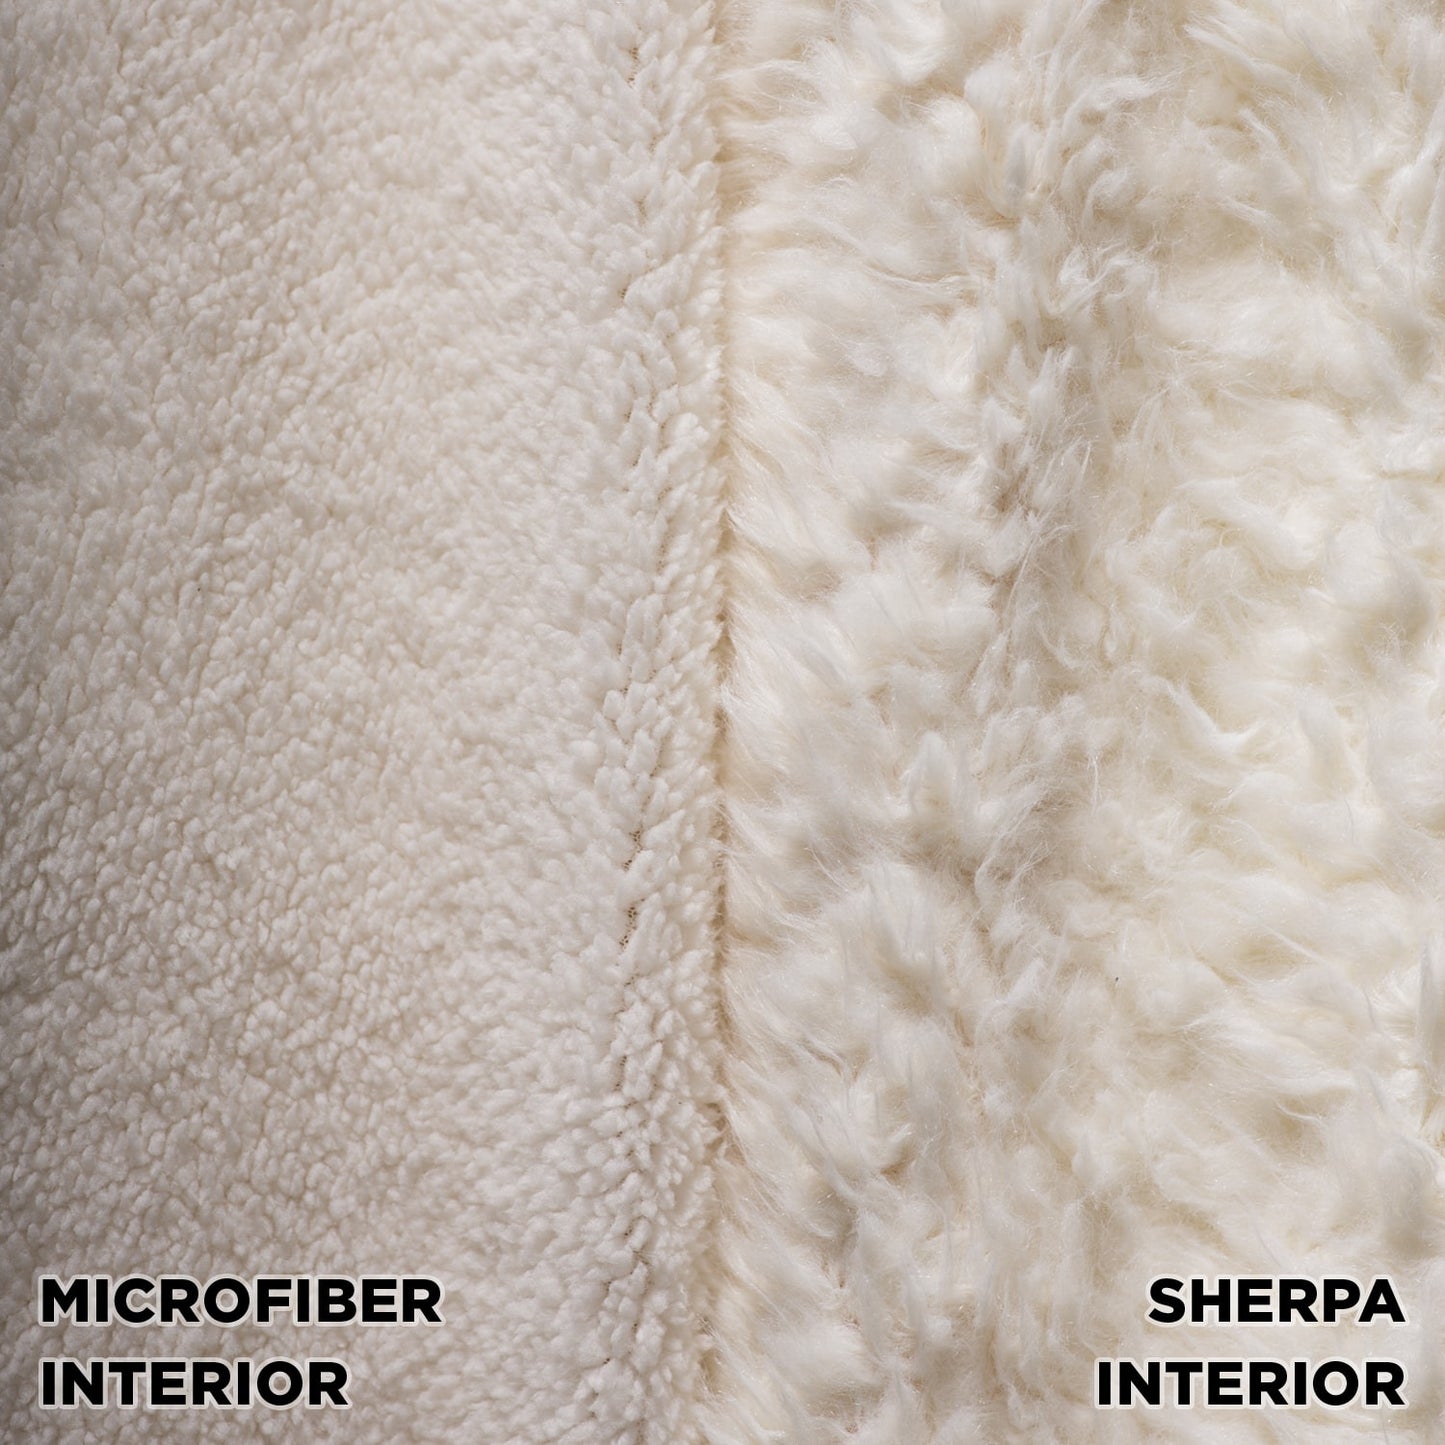 Microfiber and sherpa comparison fabrics